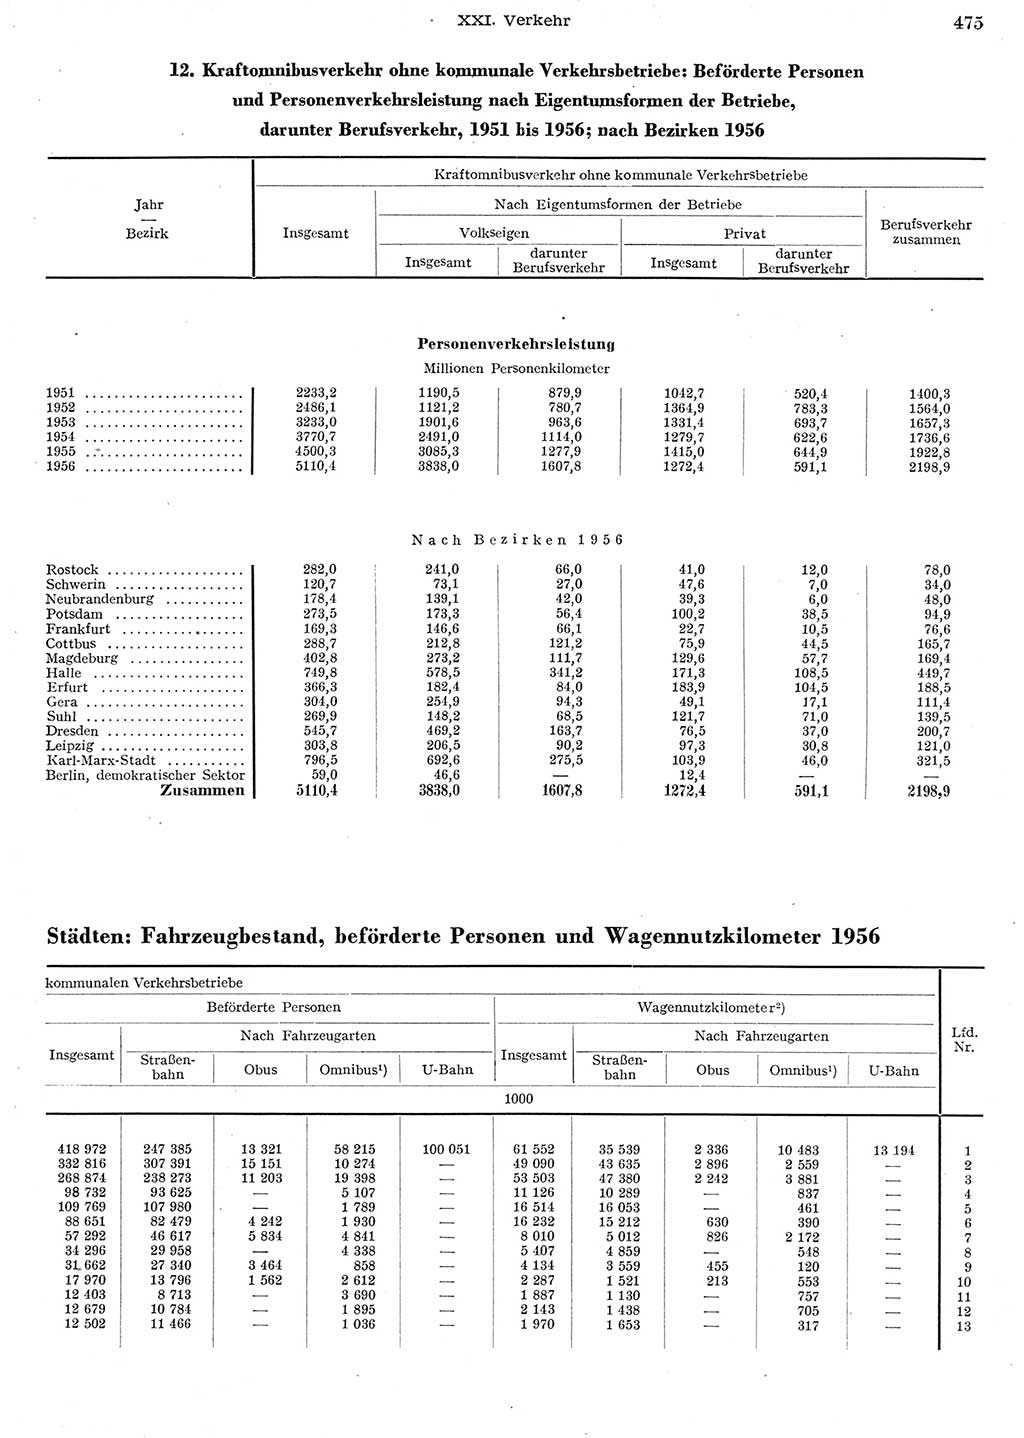 Statistisches Jahrbuch der Deutschen Demokratischen Republik (DDR) 1956, Seite 475 (Stat. Jb. DDR 1956, S. 475)